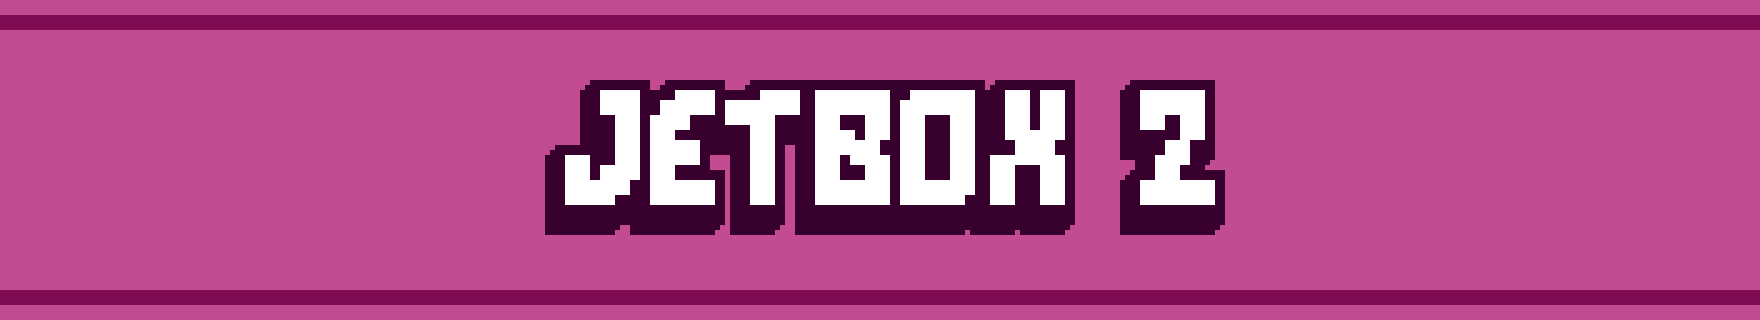 JetBox 2